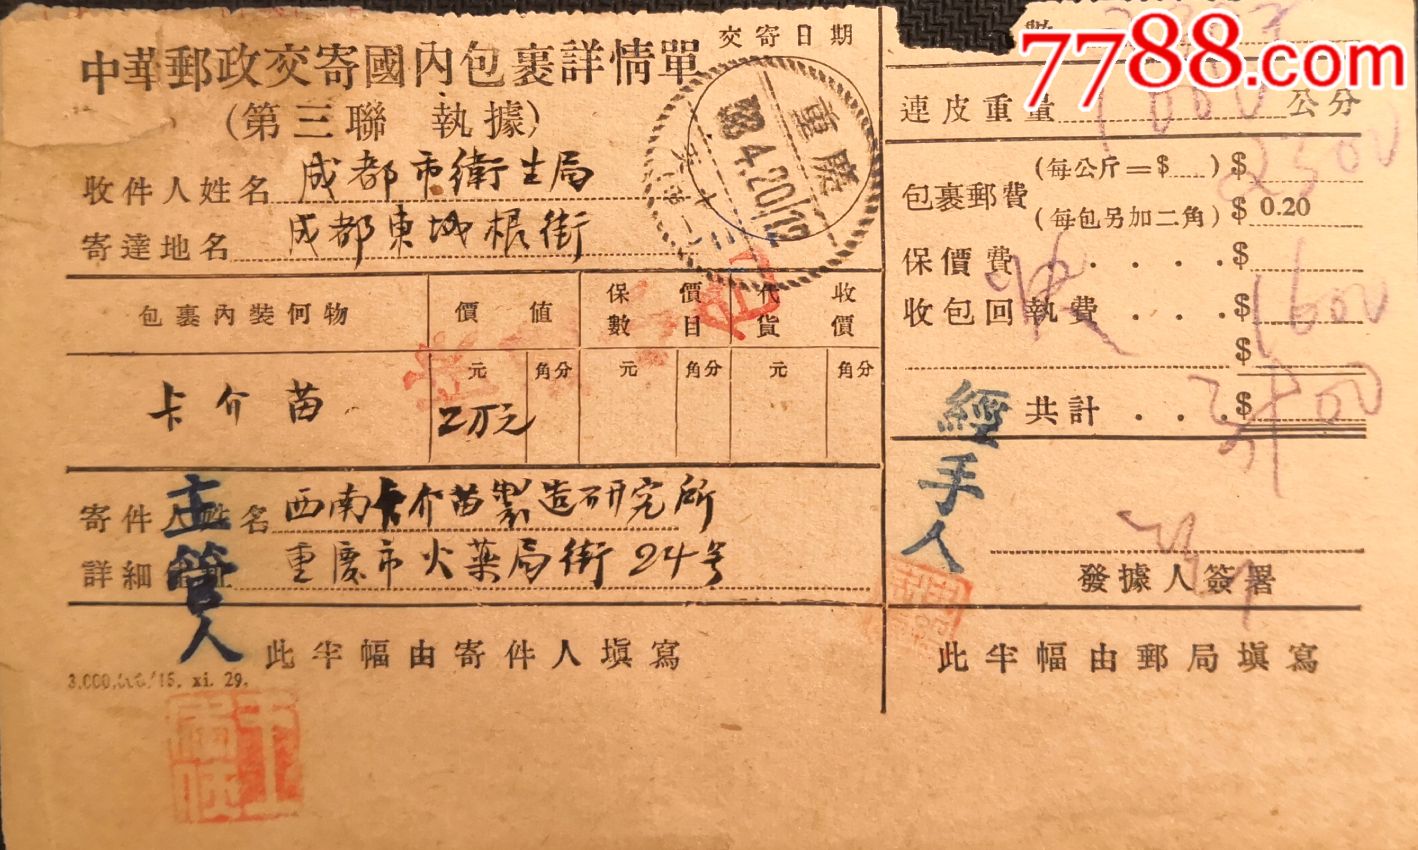 中华邮政国内包裹单